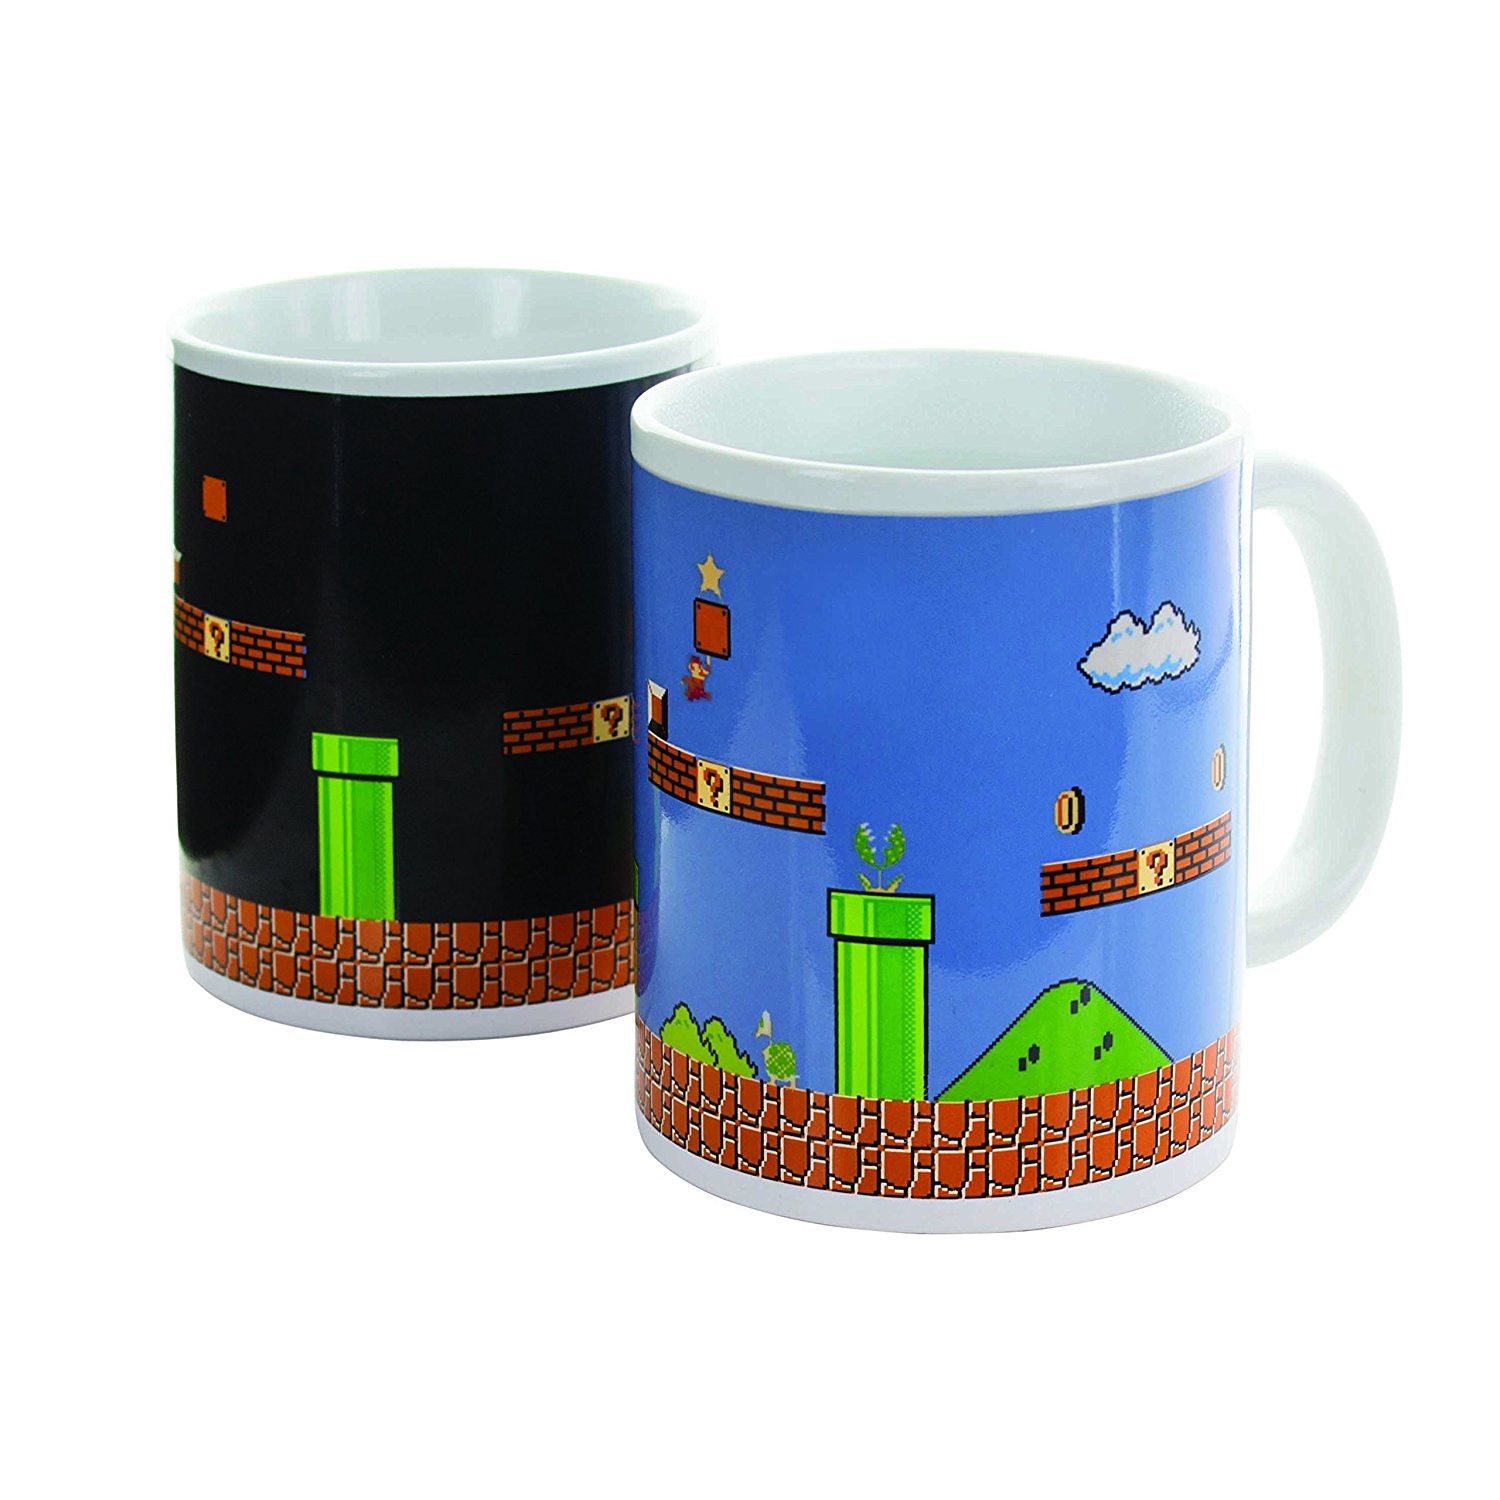 Super Mario Bros. mug dcor thermique Level